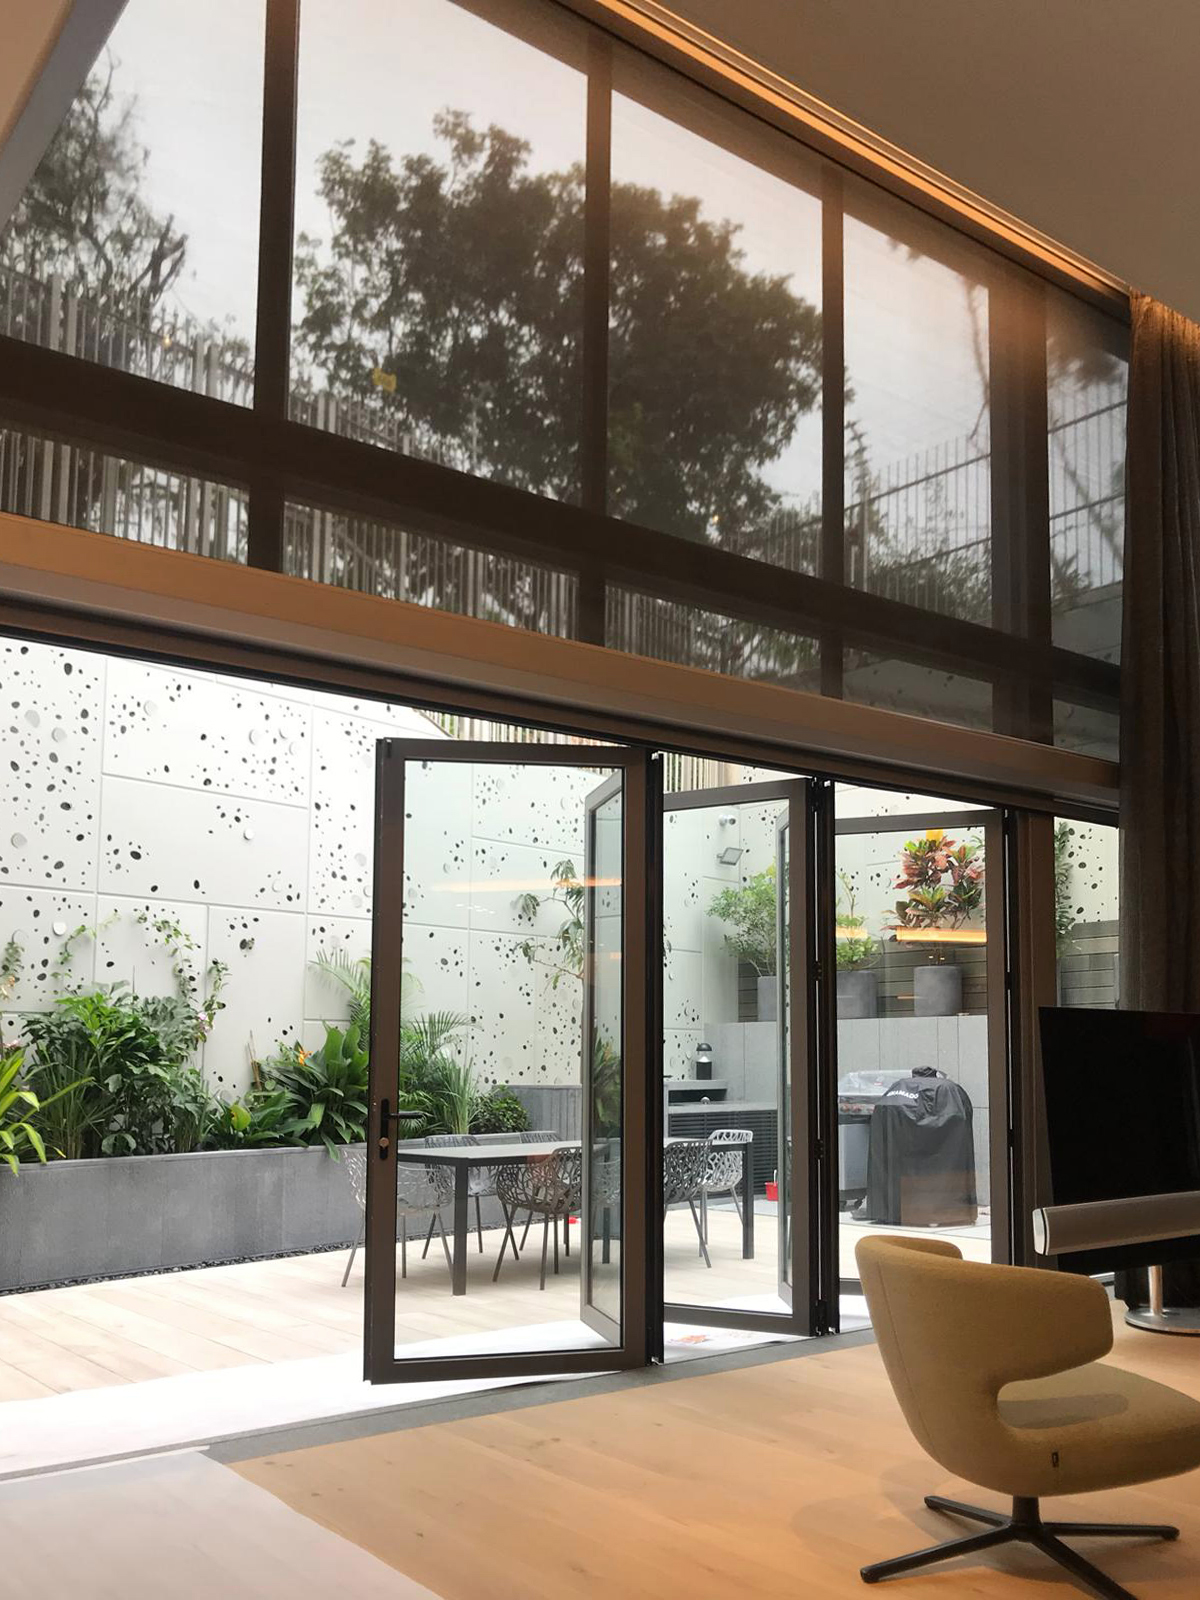 JS - Aluminium Windows in Hong Kong 香港優質鋁窗公司 – Aliplast -folding door 折疊式或滑動式玻璃門窗